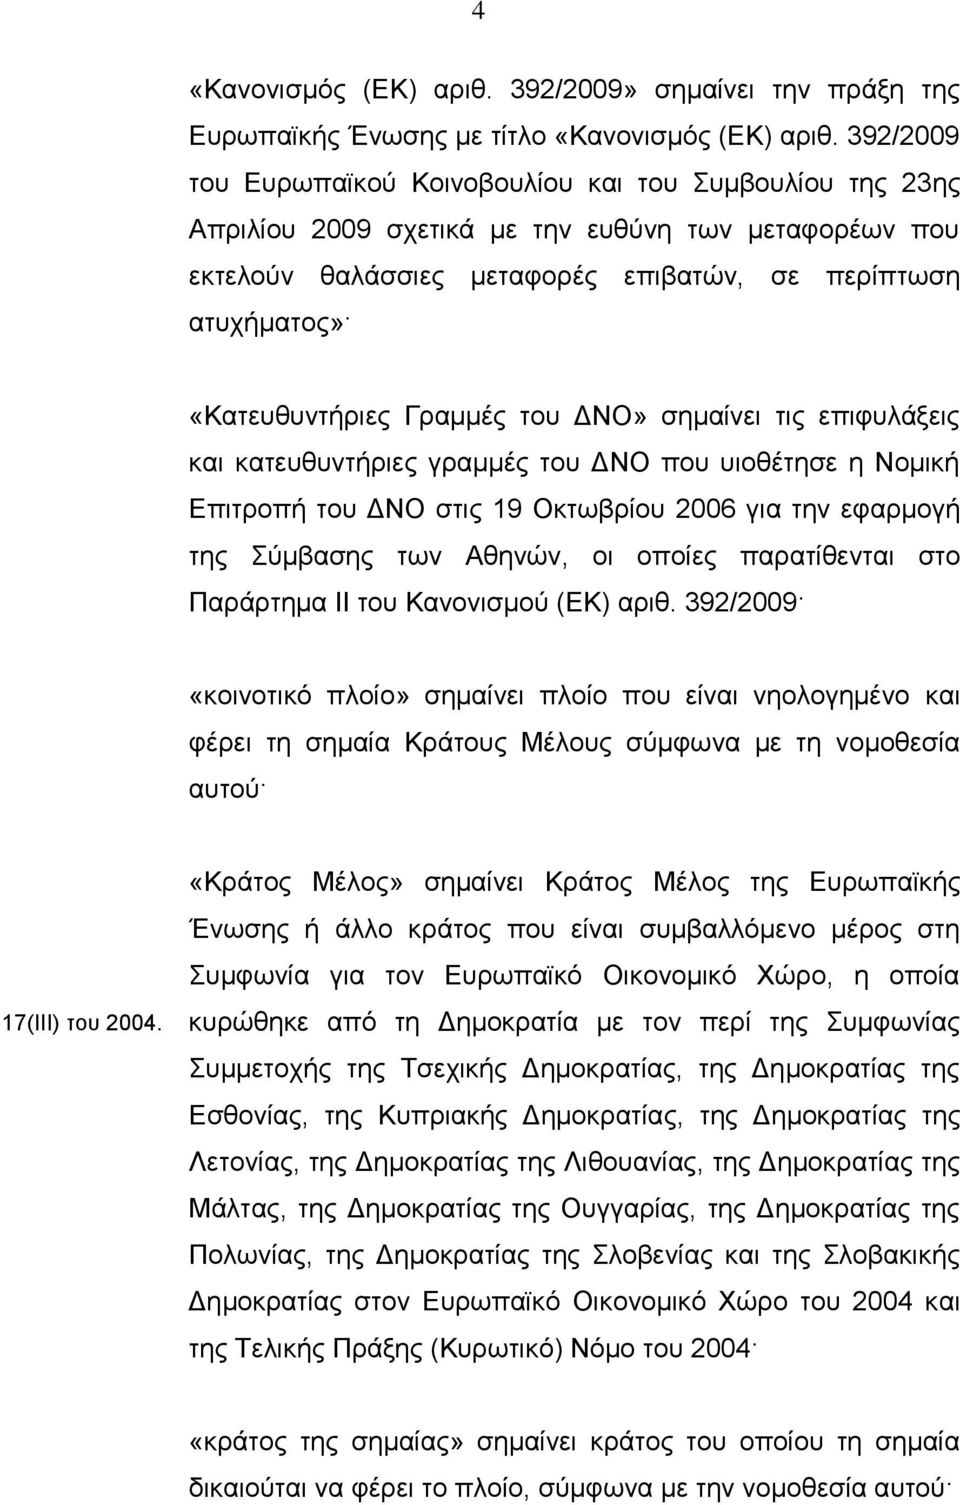 Γραμμές του ΔΝΟ» σημαίνει τις επιφυλάξεις και κατευθυντήριες γραμμές του ΔΝΟ που υιοθέτησε η Νομική Επιτροπή του ΔΝΟ στις 19 Οκτωβρίου 2006 για την εφαρμογή της Σύμβασης των Αθηνών, οι οποίες